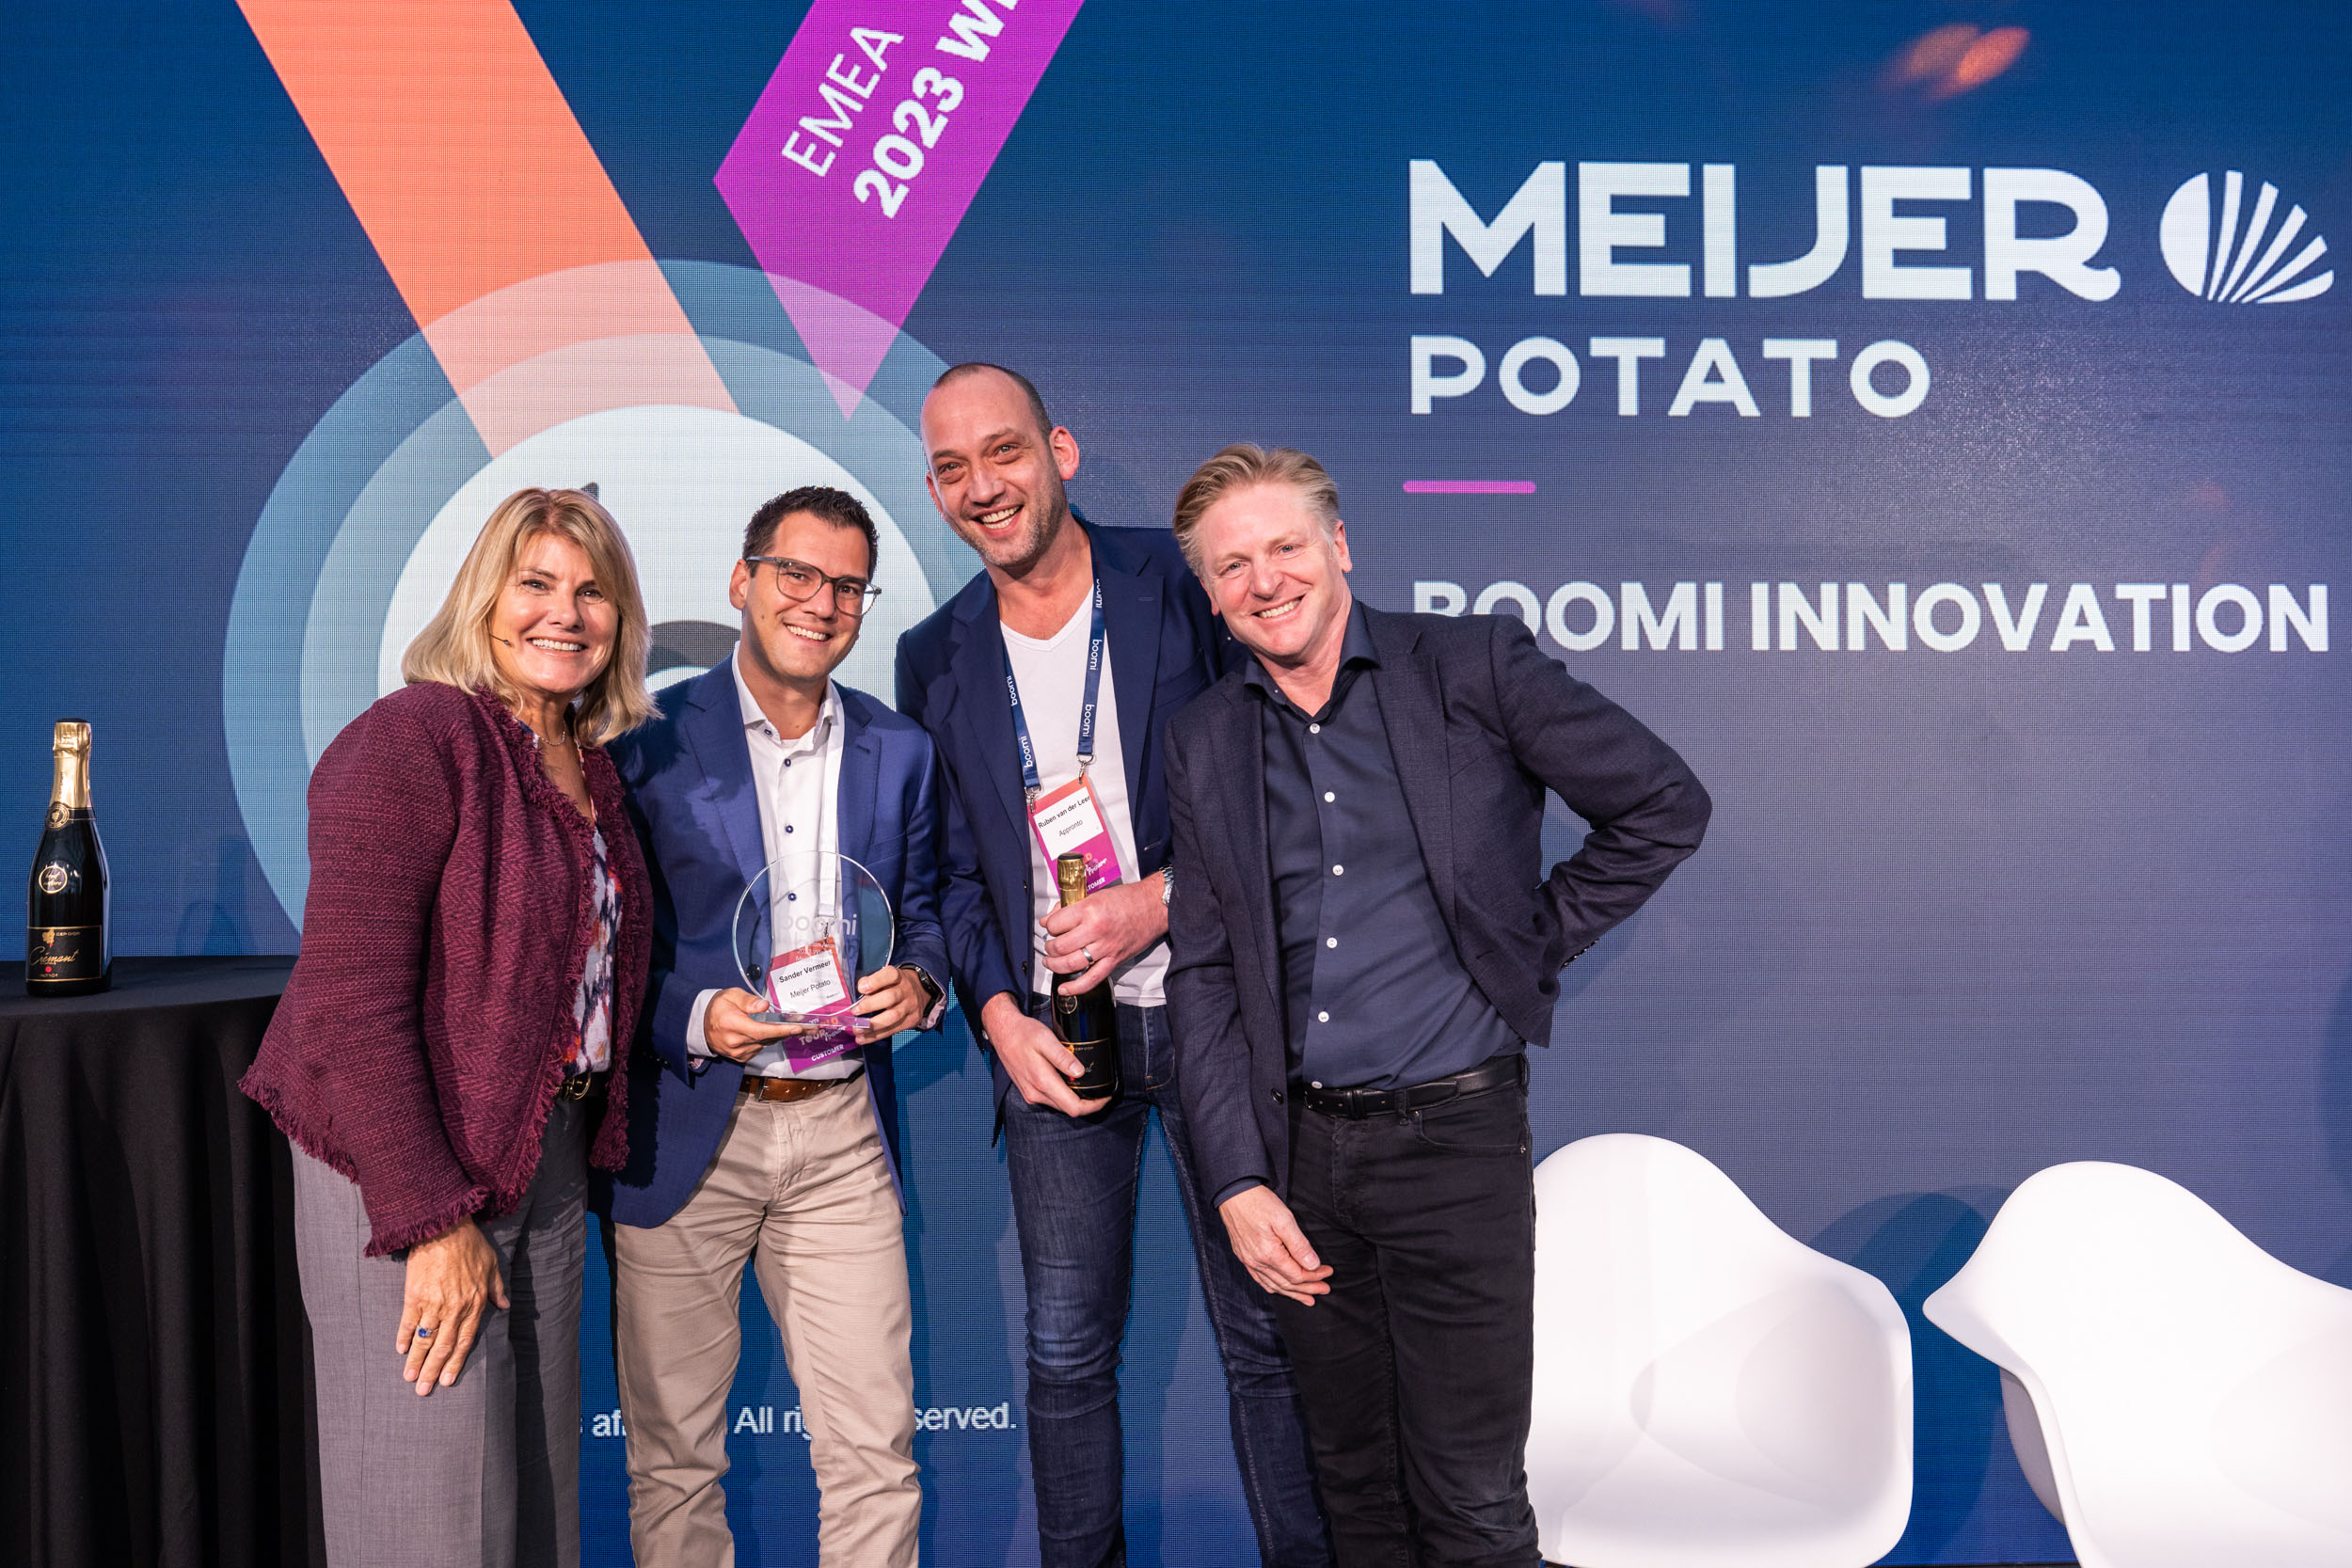 Meijer Potato Wins Boomi EMEA Customer Innovation Award at Boomi World Tour